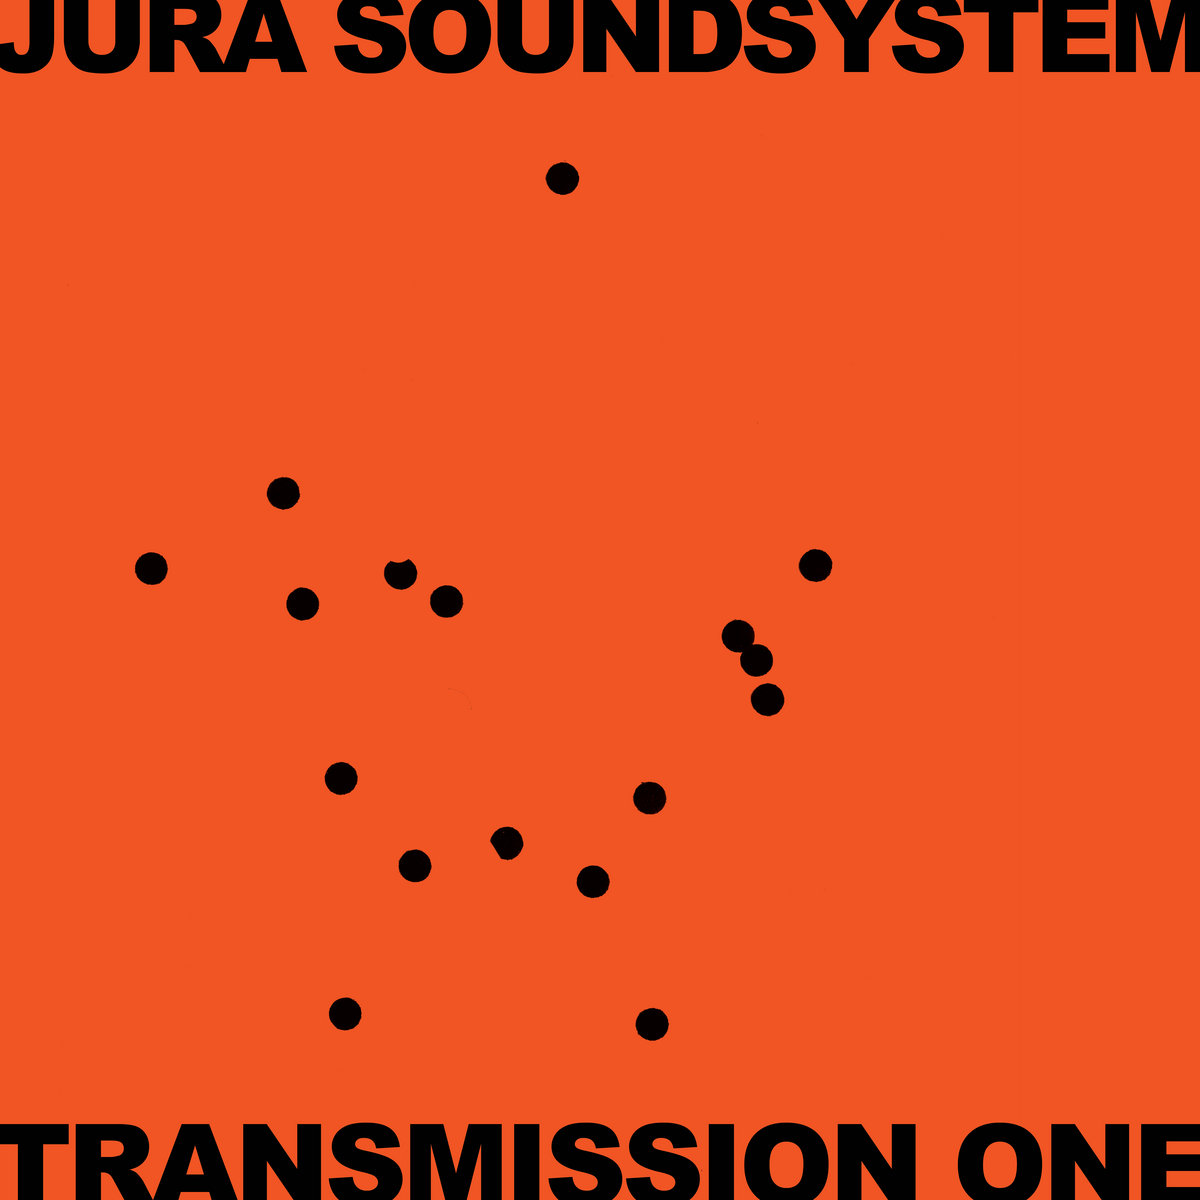 JURA SOUNDSYSTEM PRESENTS TRANSMISSION ONE (2LP) -pre-order-